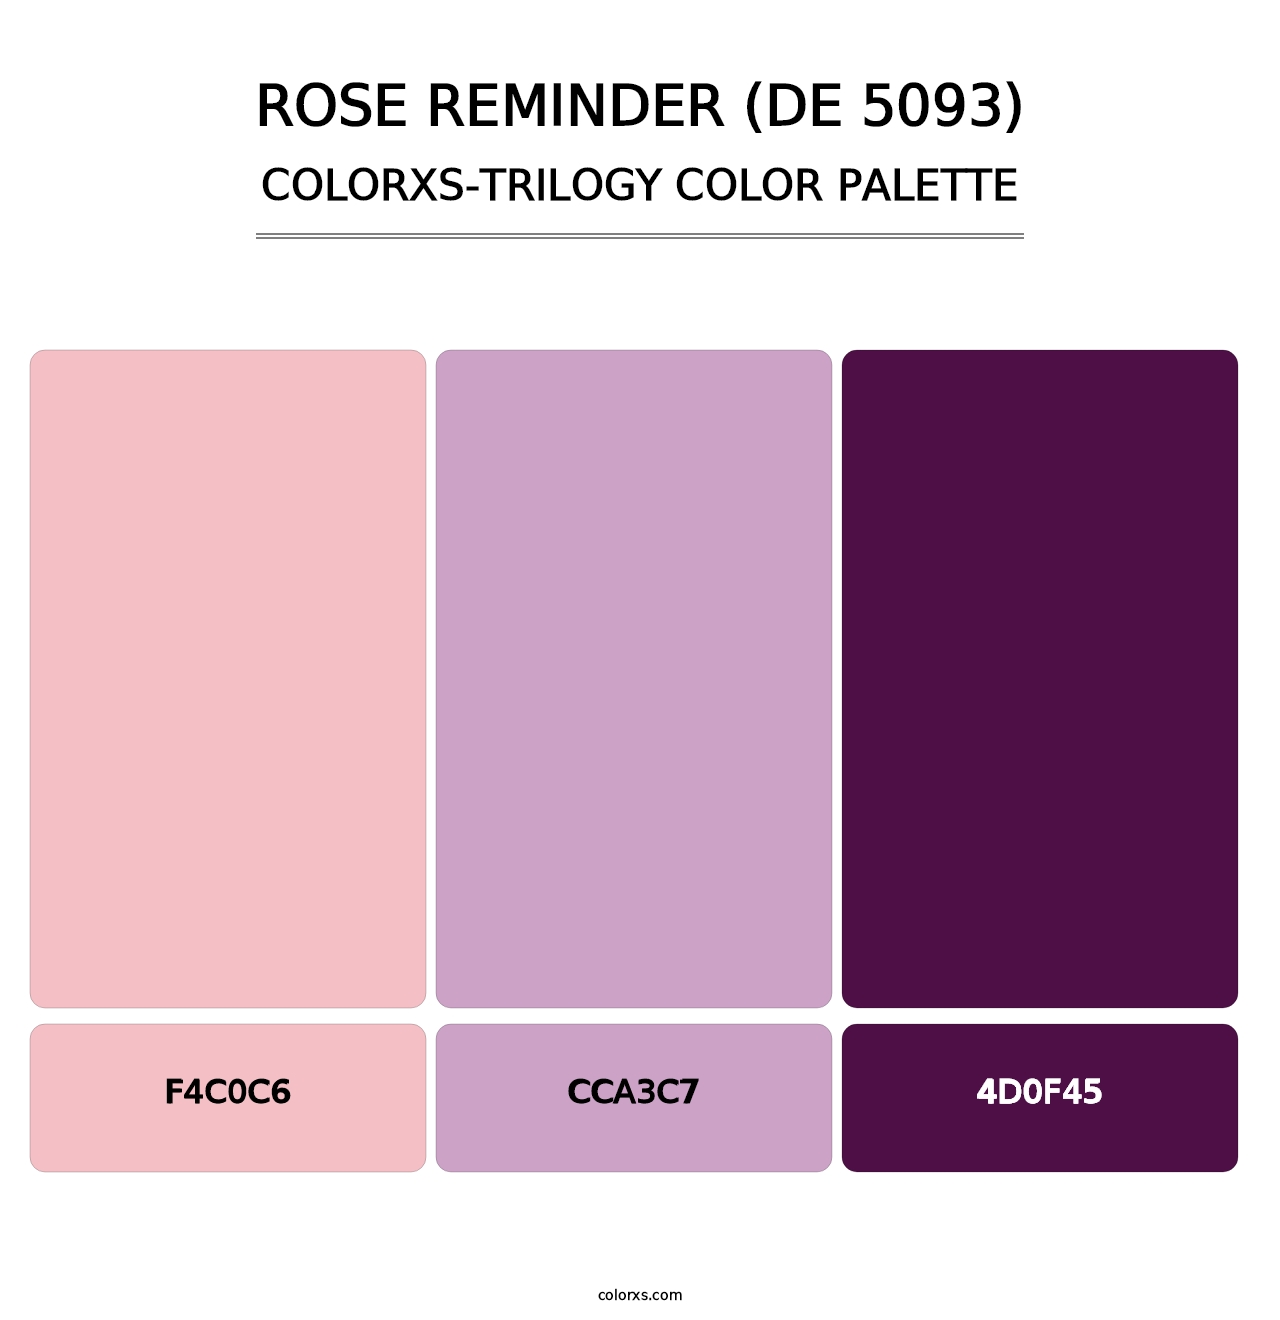 Rose Reminder (DE 5093) - Colorxs Trilogy Palette